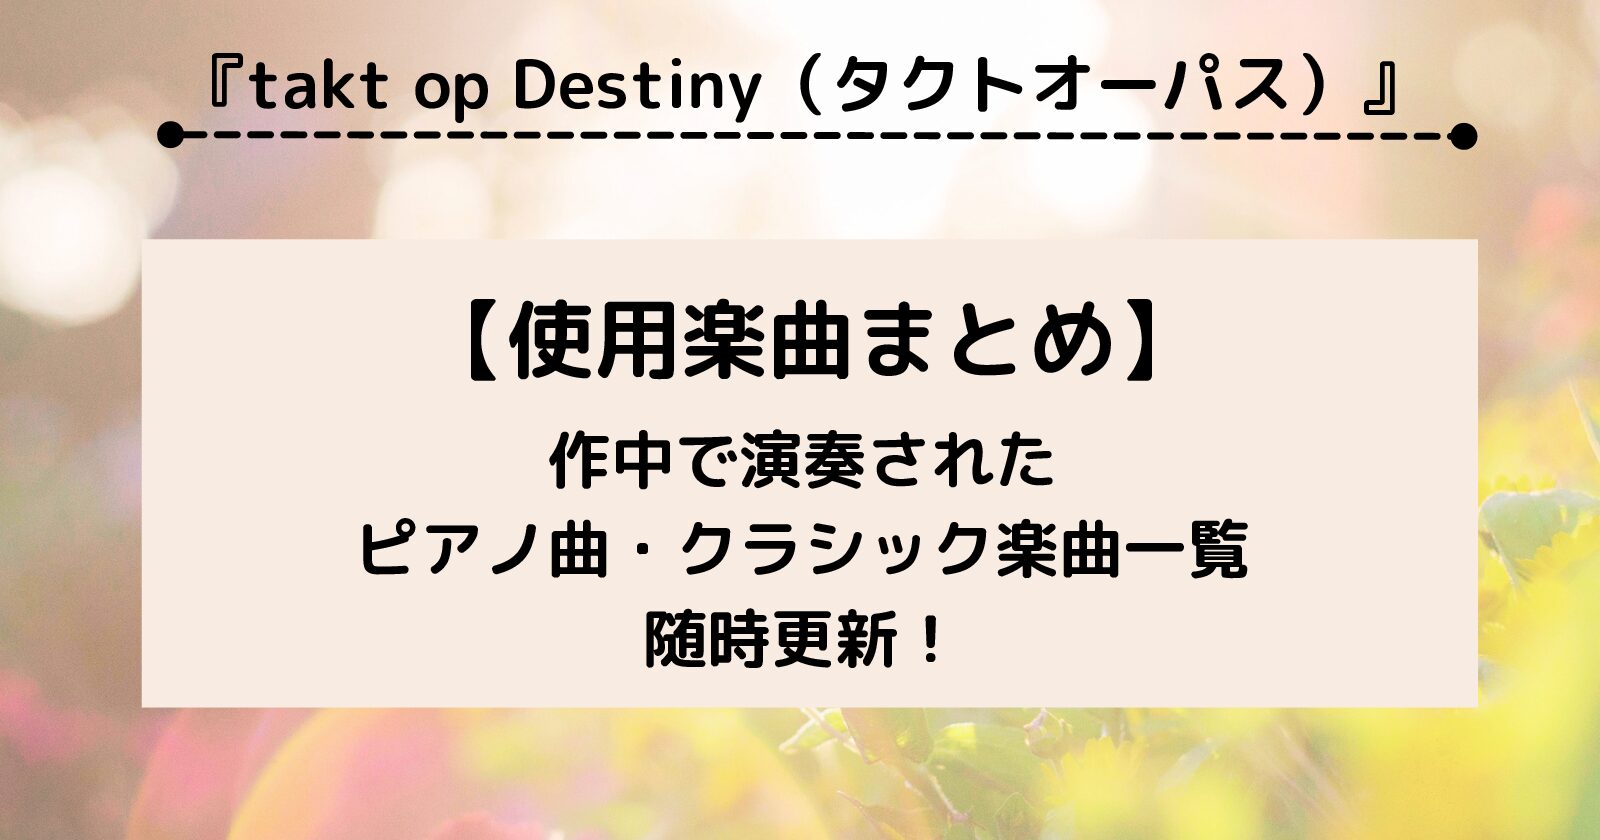 アニメ『タクトオーパス』で使用されたピアノ・クラシック曲まとめ【takt op destiny】(随時更新)